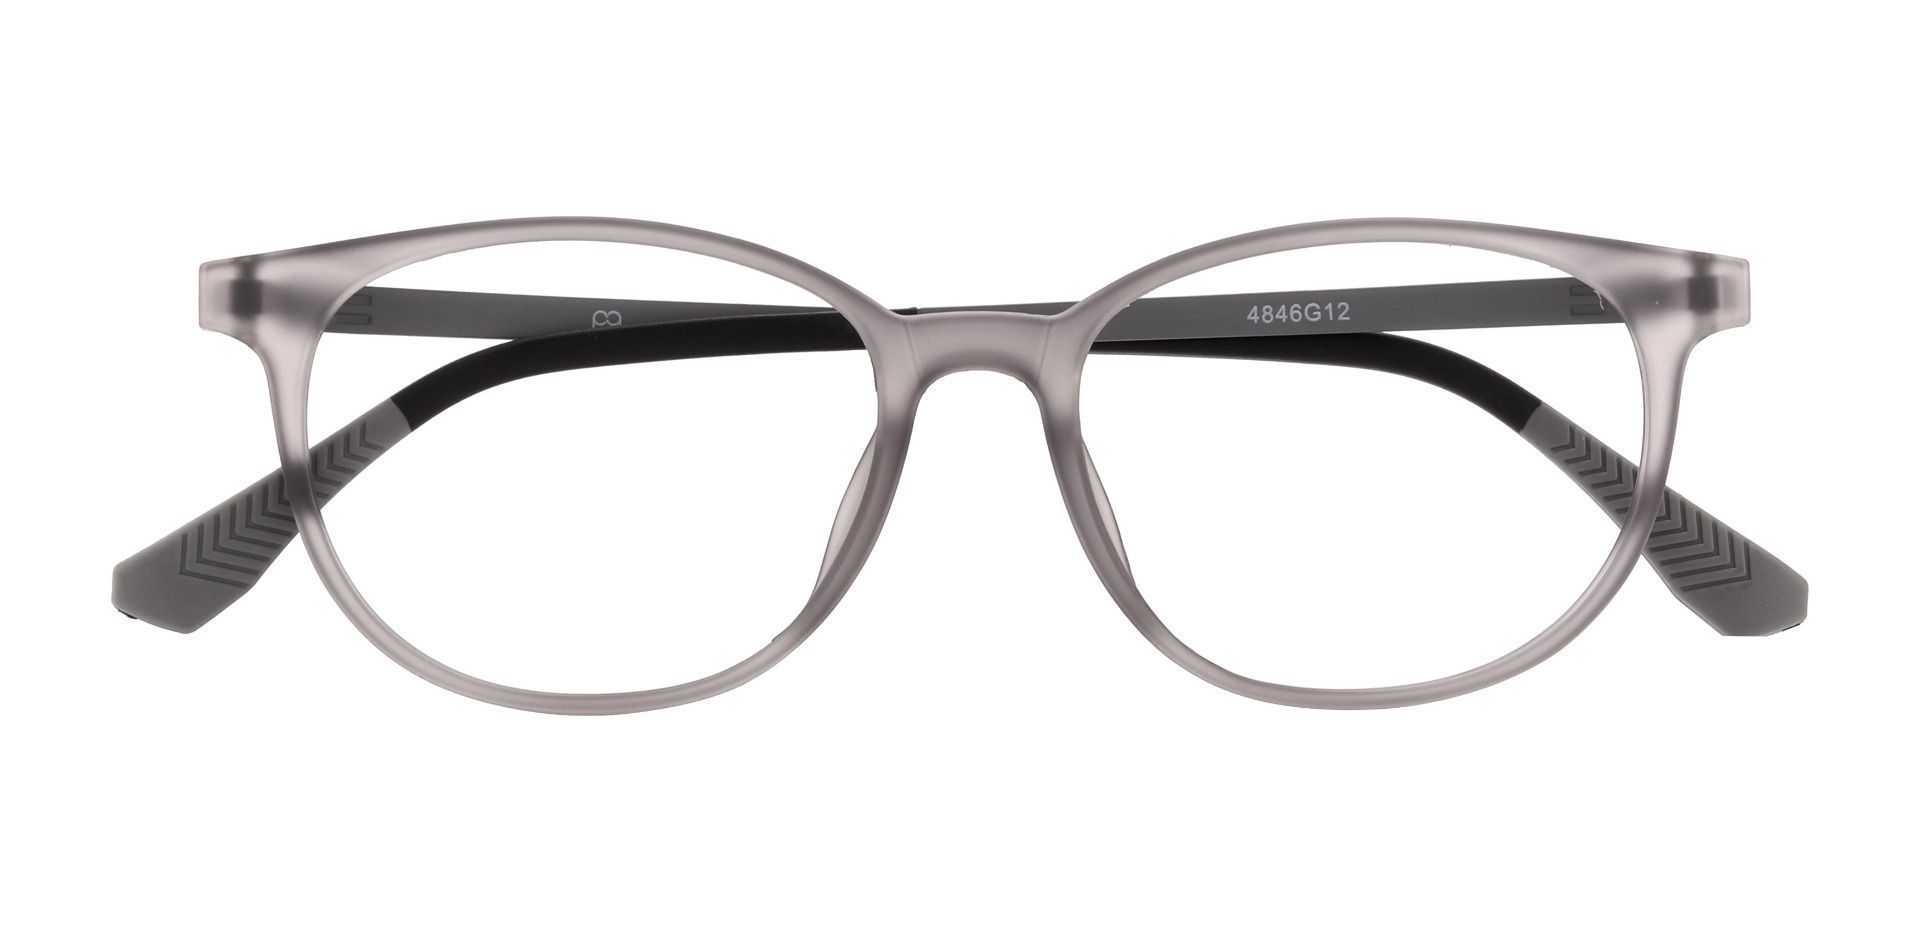 Hannigan Oval Prescription Glasses - Gray